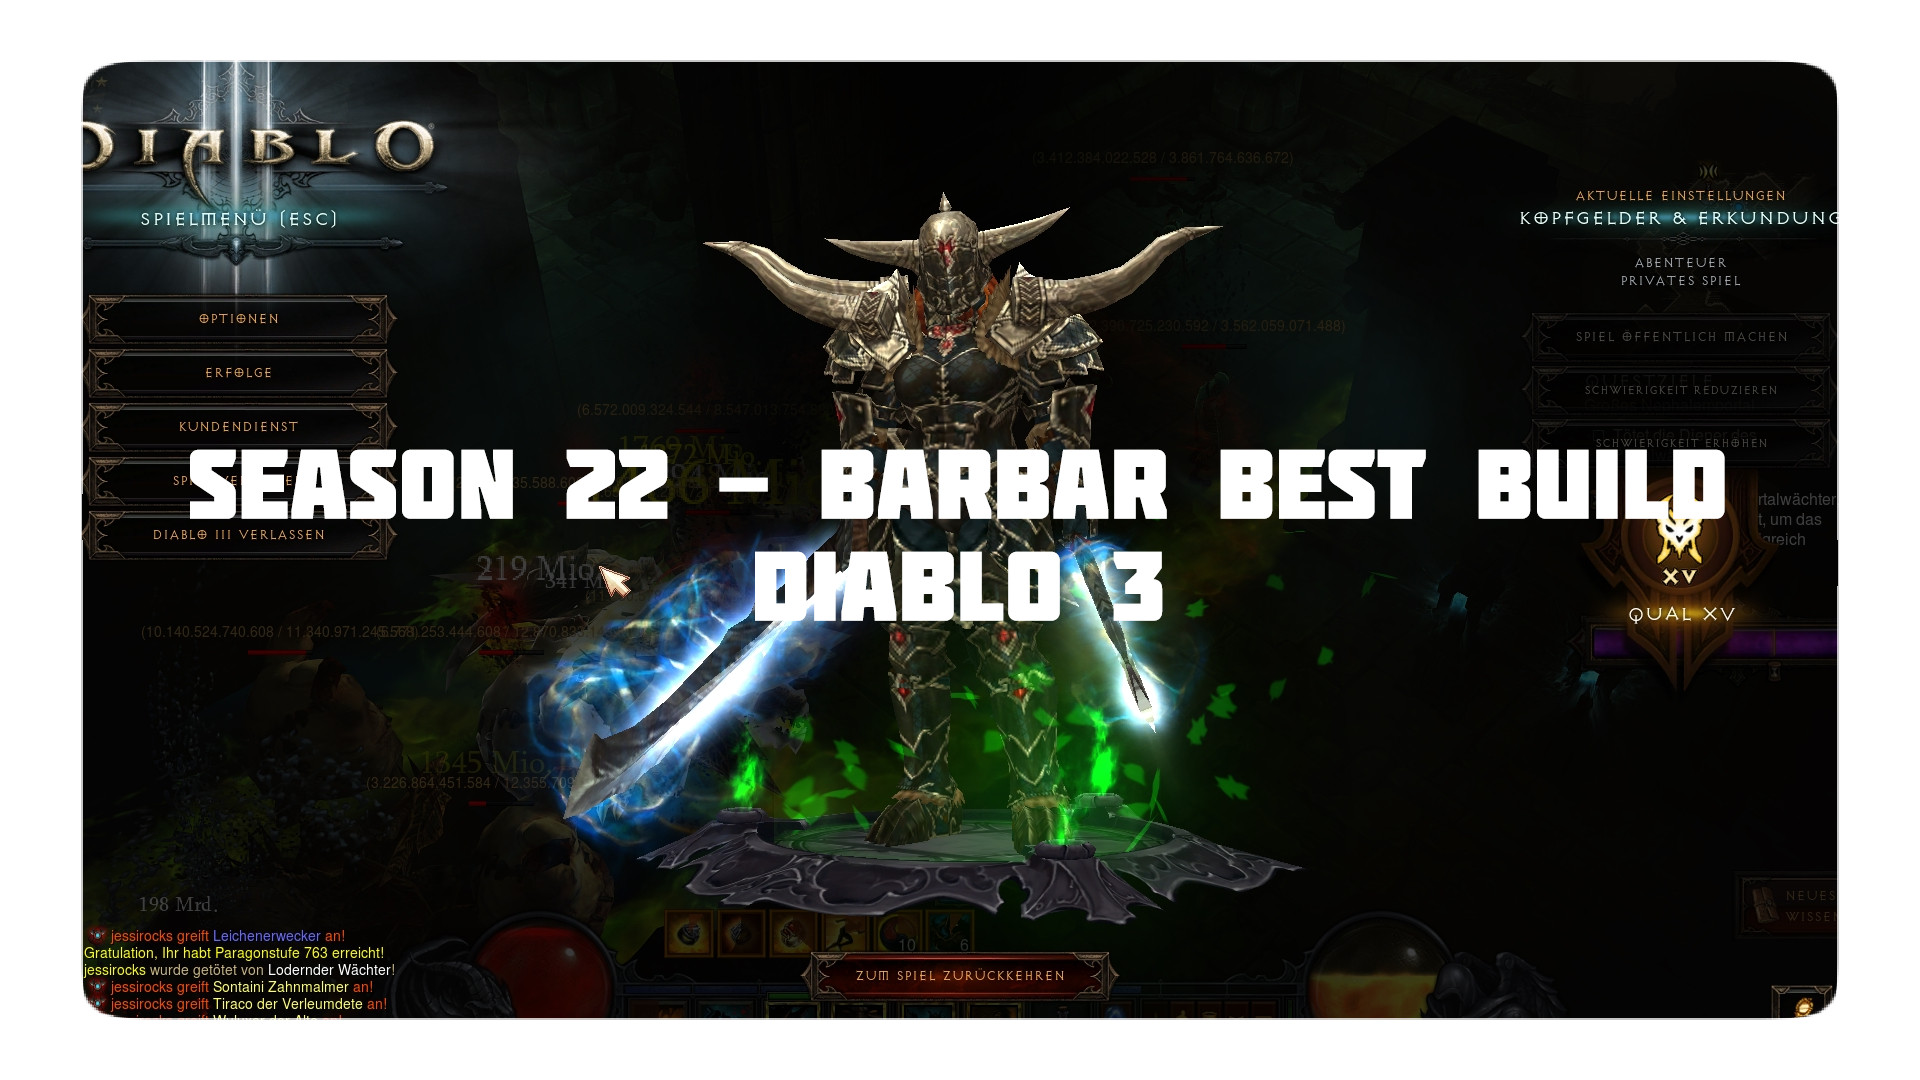 diablo 3 - barbar build season 22